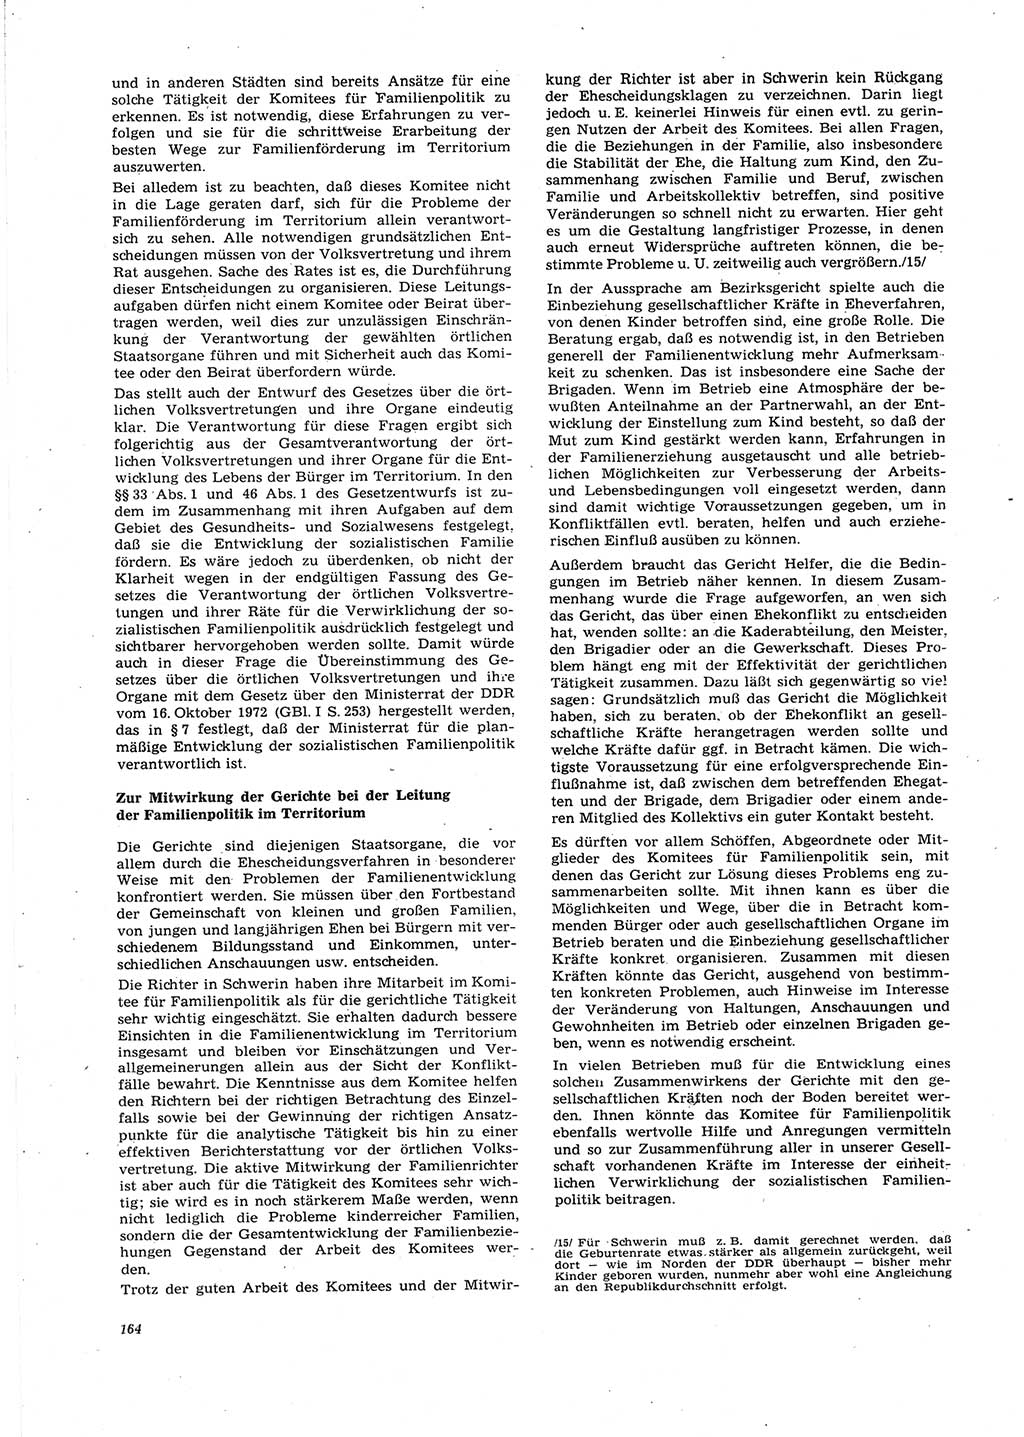 Neue Justiz (NJ), Zeitschrift für Recht und Rechtswissenschaft [Deutsche Demokratische Republik (DDR)], 27. Jahrgang 1973, Seite 164 (NJ DDR 1973, S. 164)